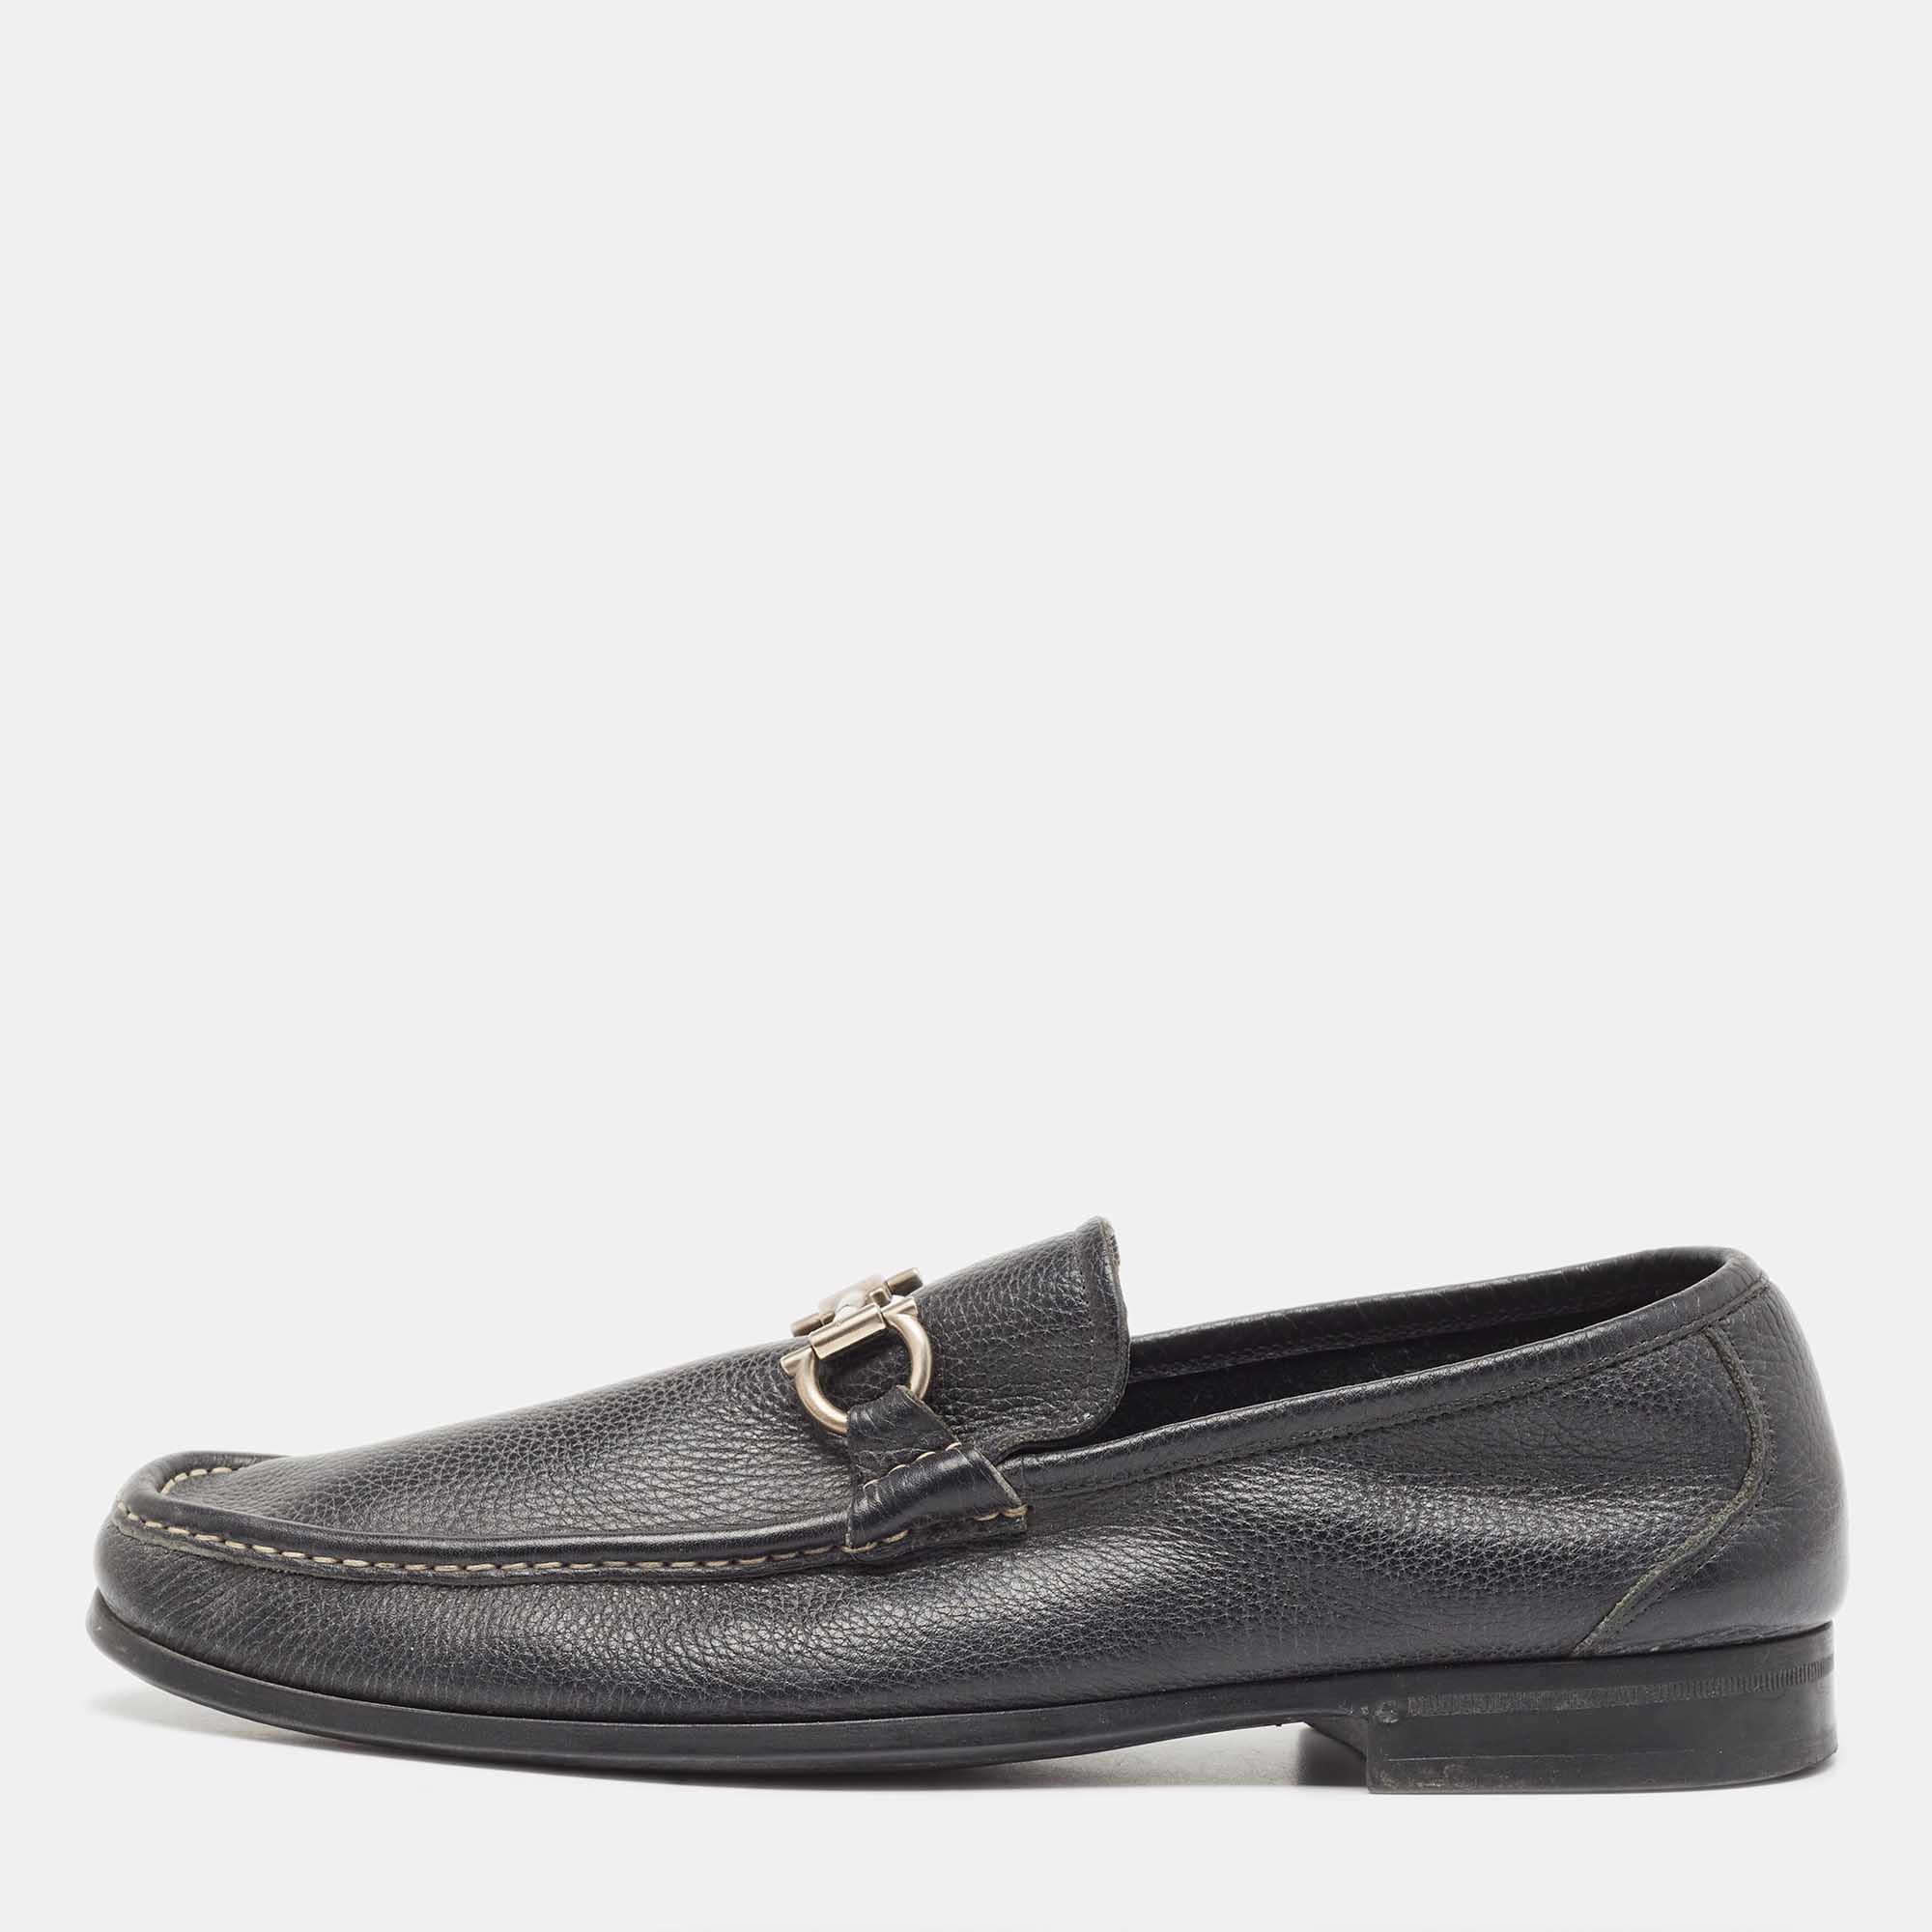 Salvatore ferragamo black leather gancini driver loafers size 45